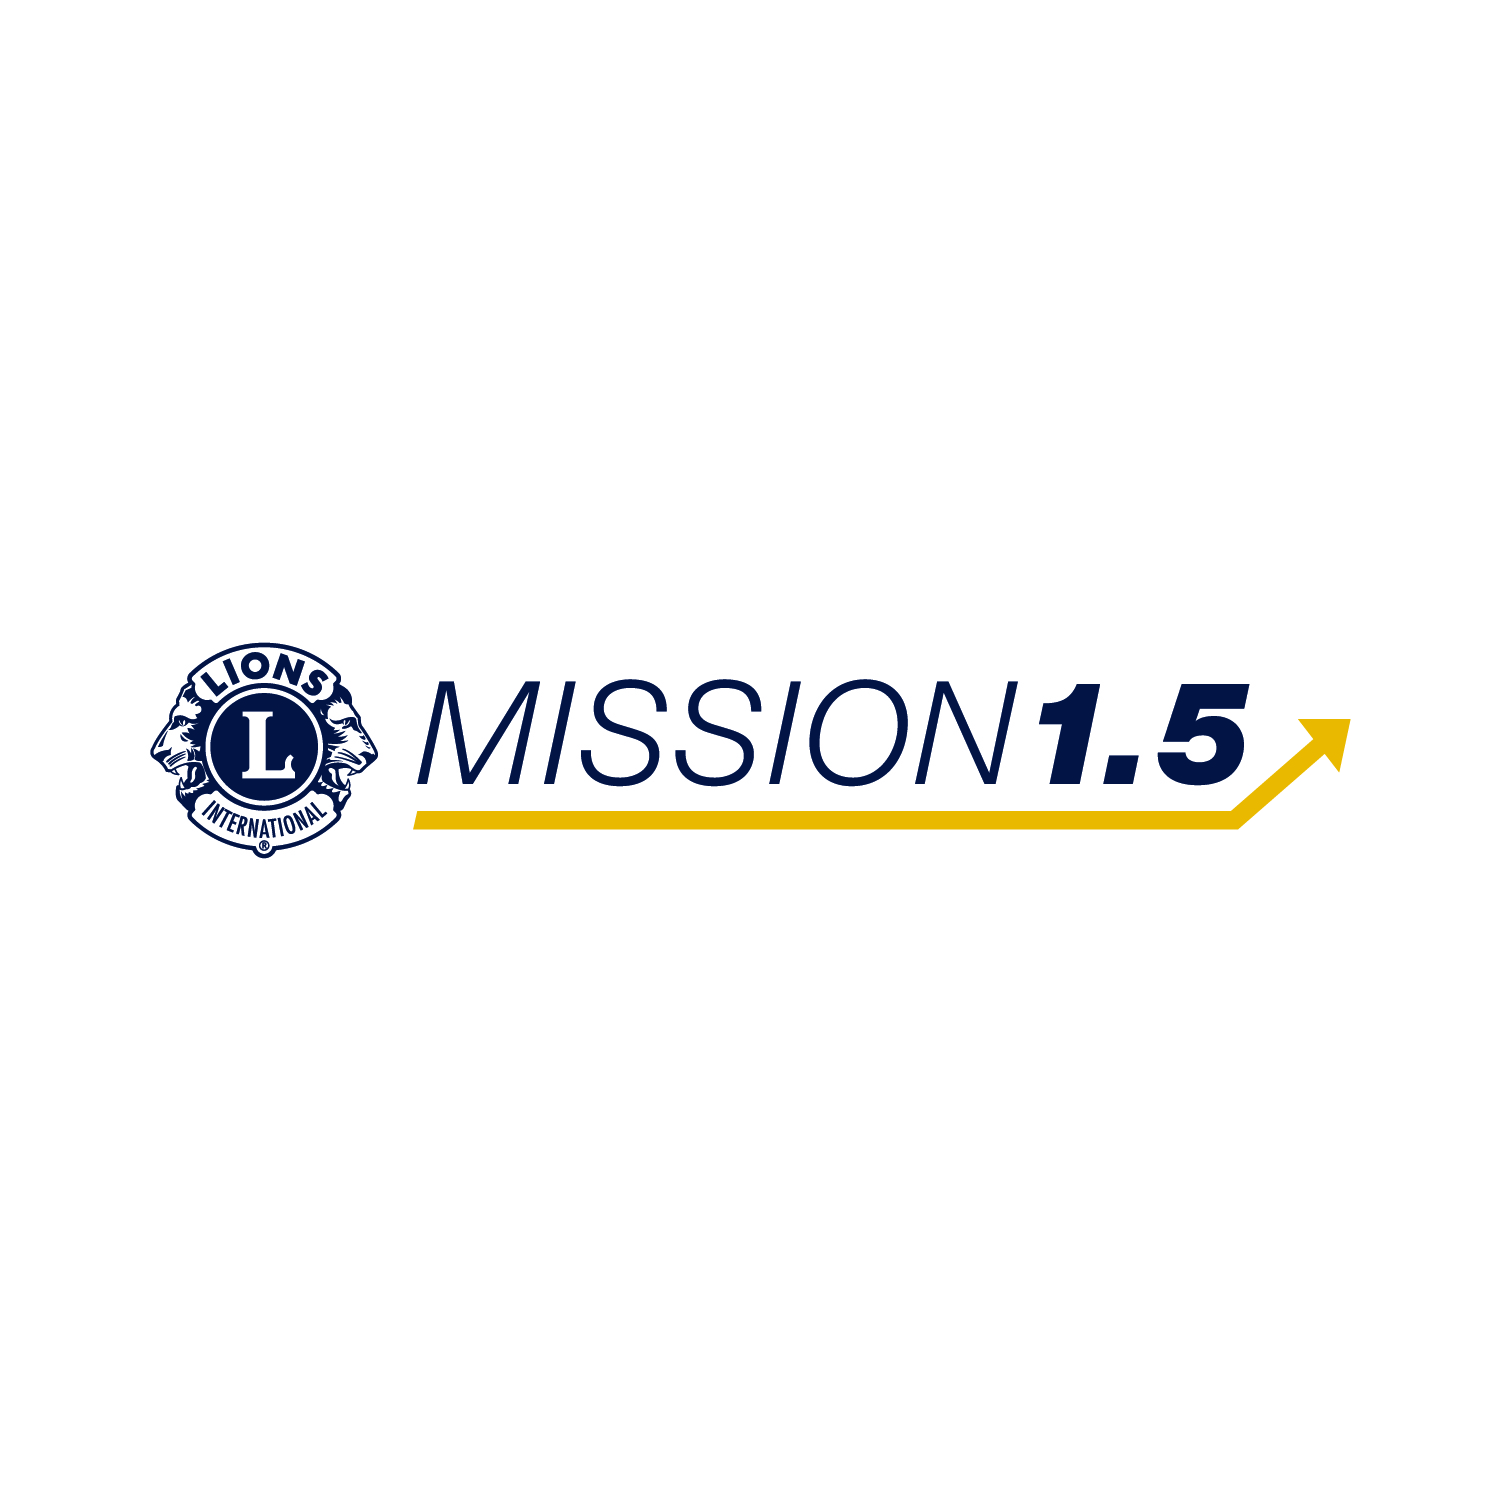 MISSION 1.5